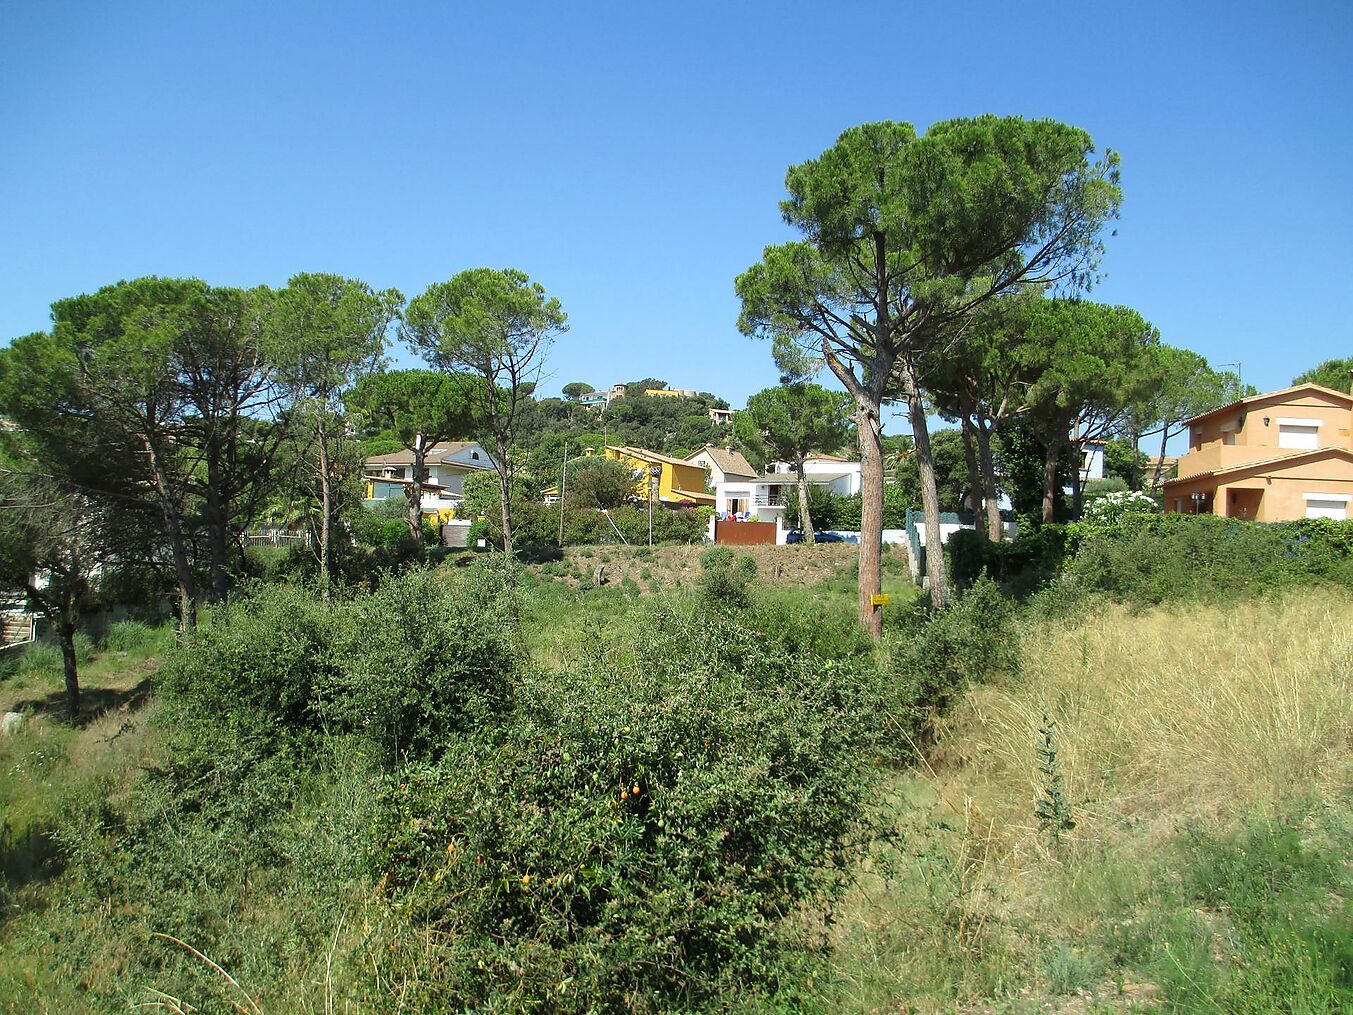 Parcel·la de terreny situada entre Platja d'Aro i Calonge